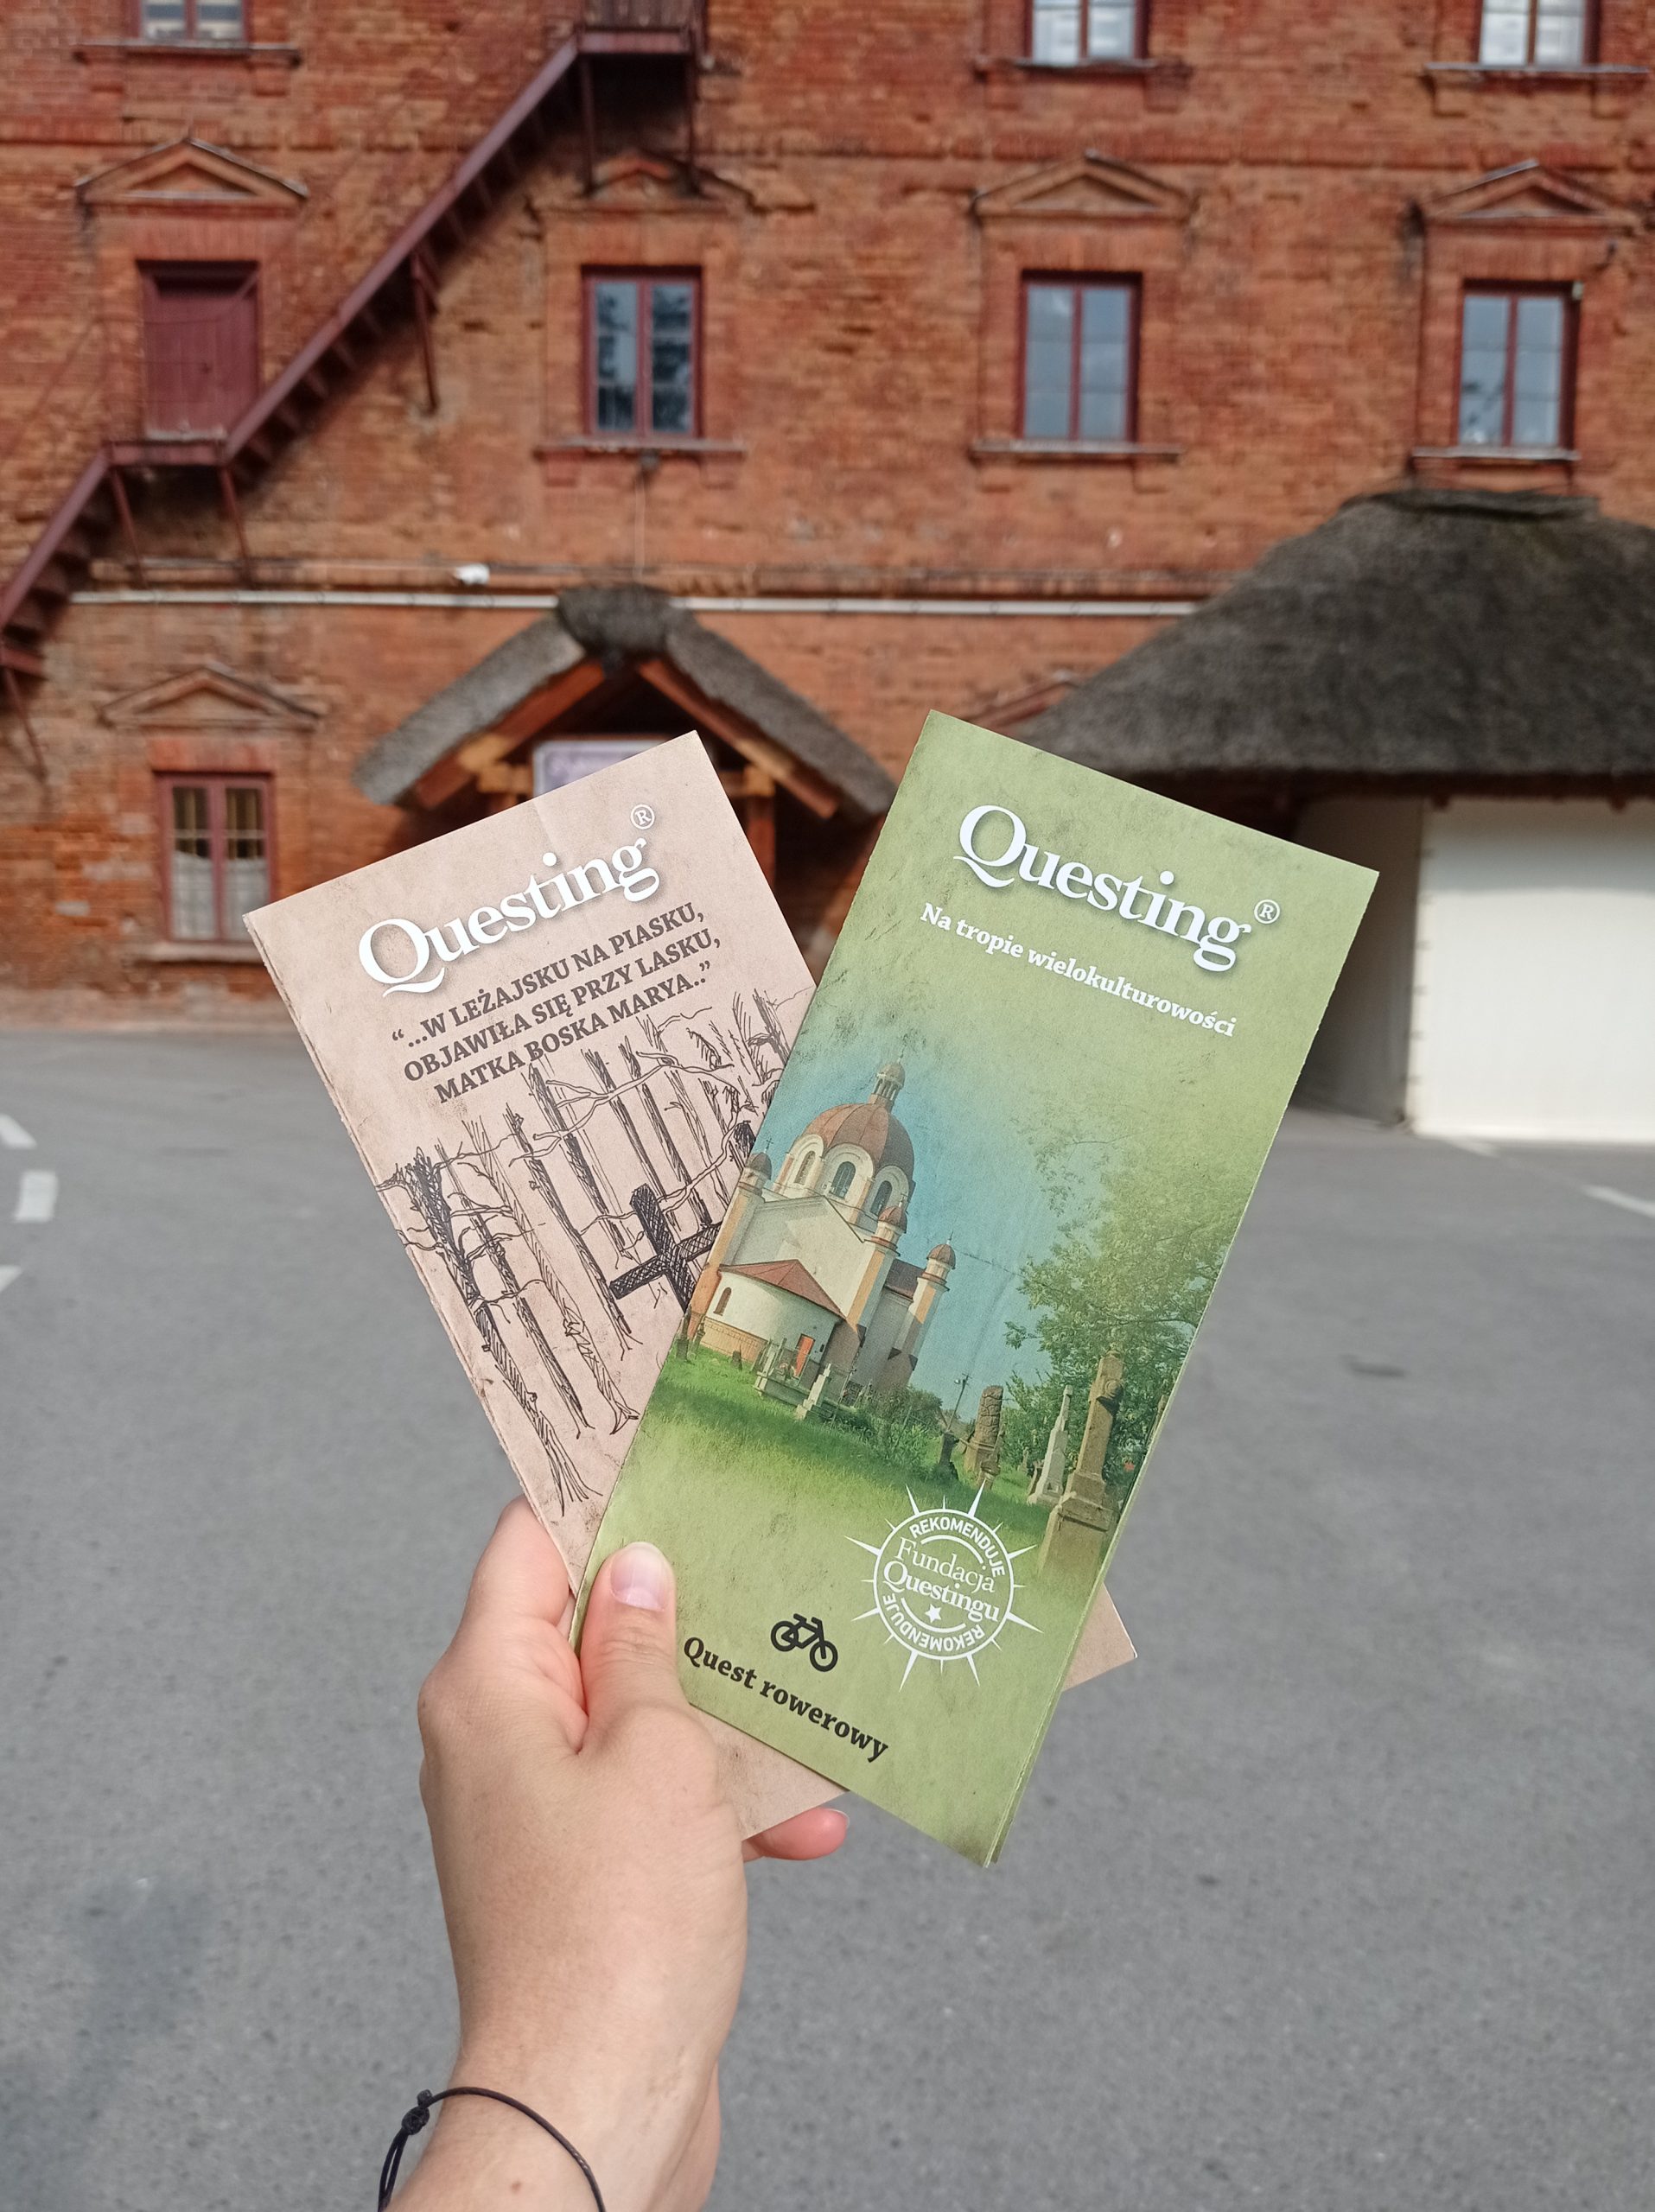 Questy Powiatu Leżajskiego zadebiutowały na Ogólnopolskim Festiwalu Questingu w Bałtowie